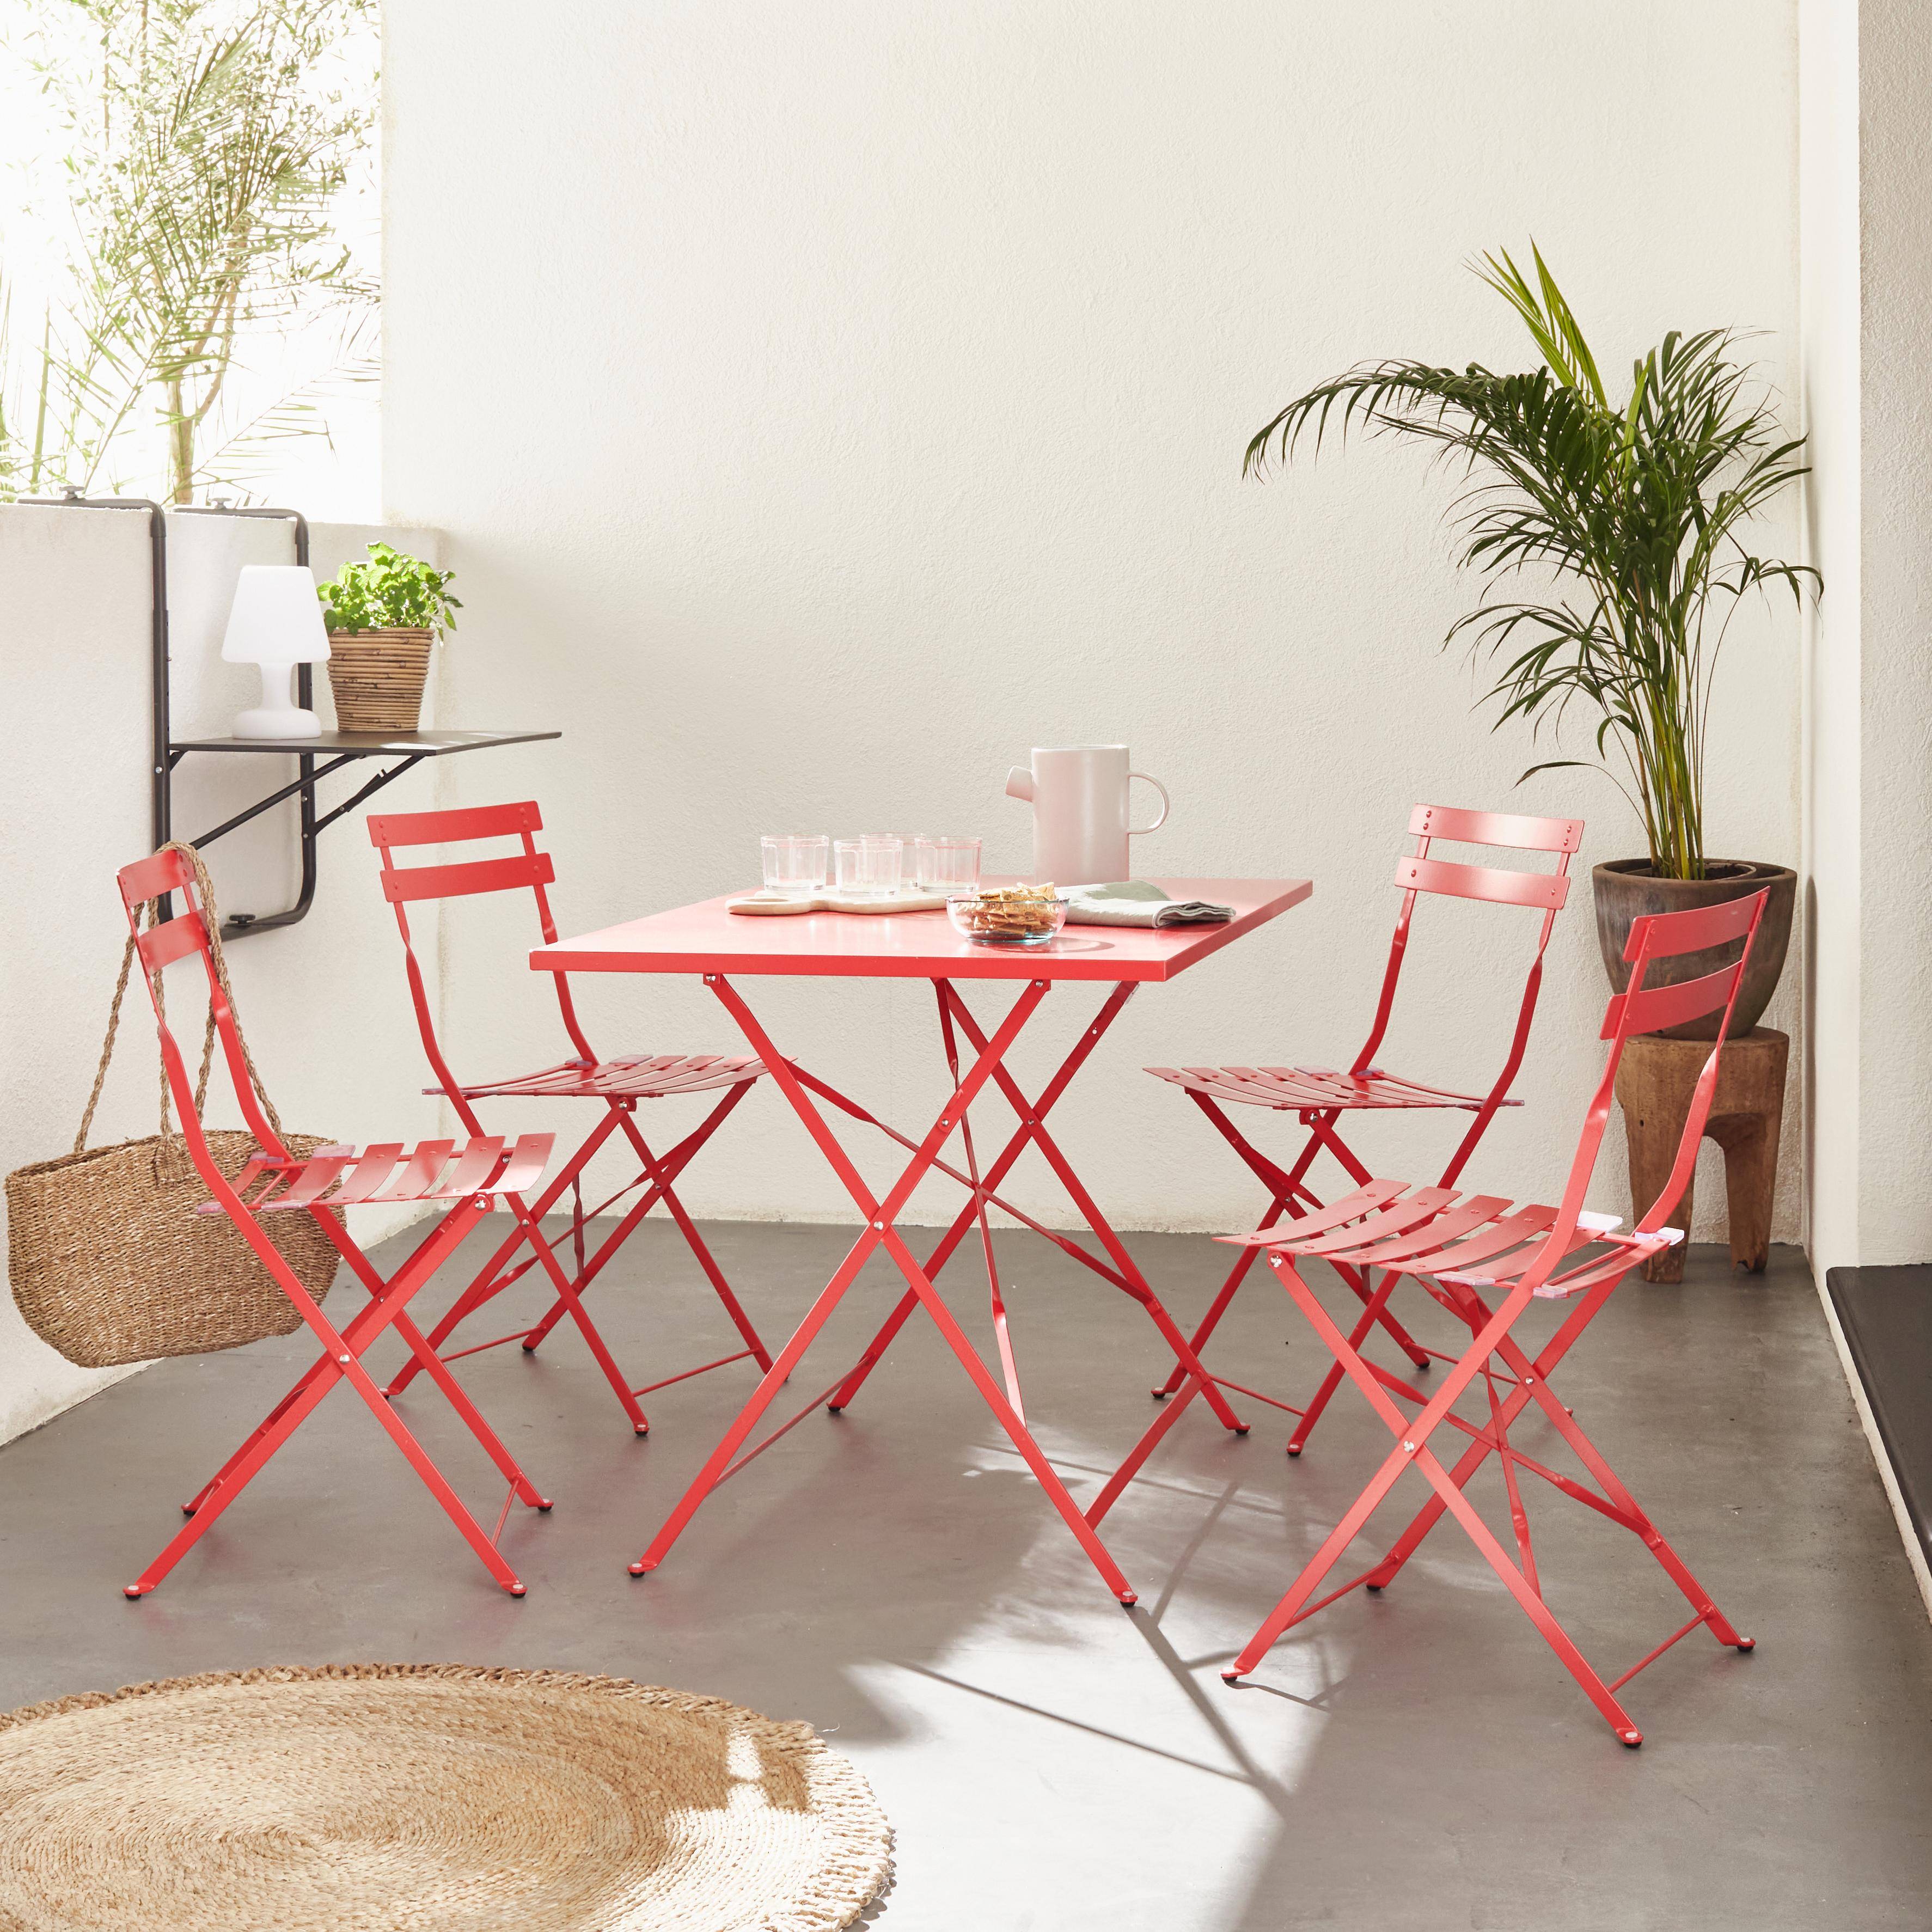 Tavolo da giardino, bar bistrot, pieghevole - modello: Emilia, rettangolare, colore: Rosso Lampone - Tavolo, dimensioni: 110x70cm, con quattro sedie pieghevoli, acciaio termolaccato Photo1